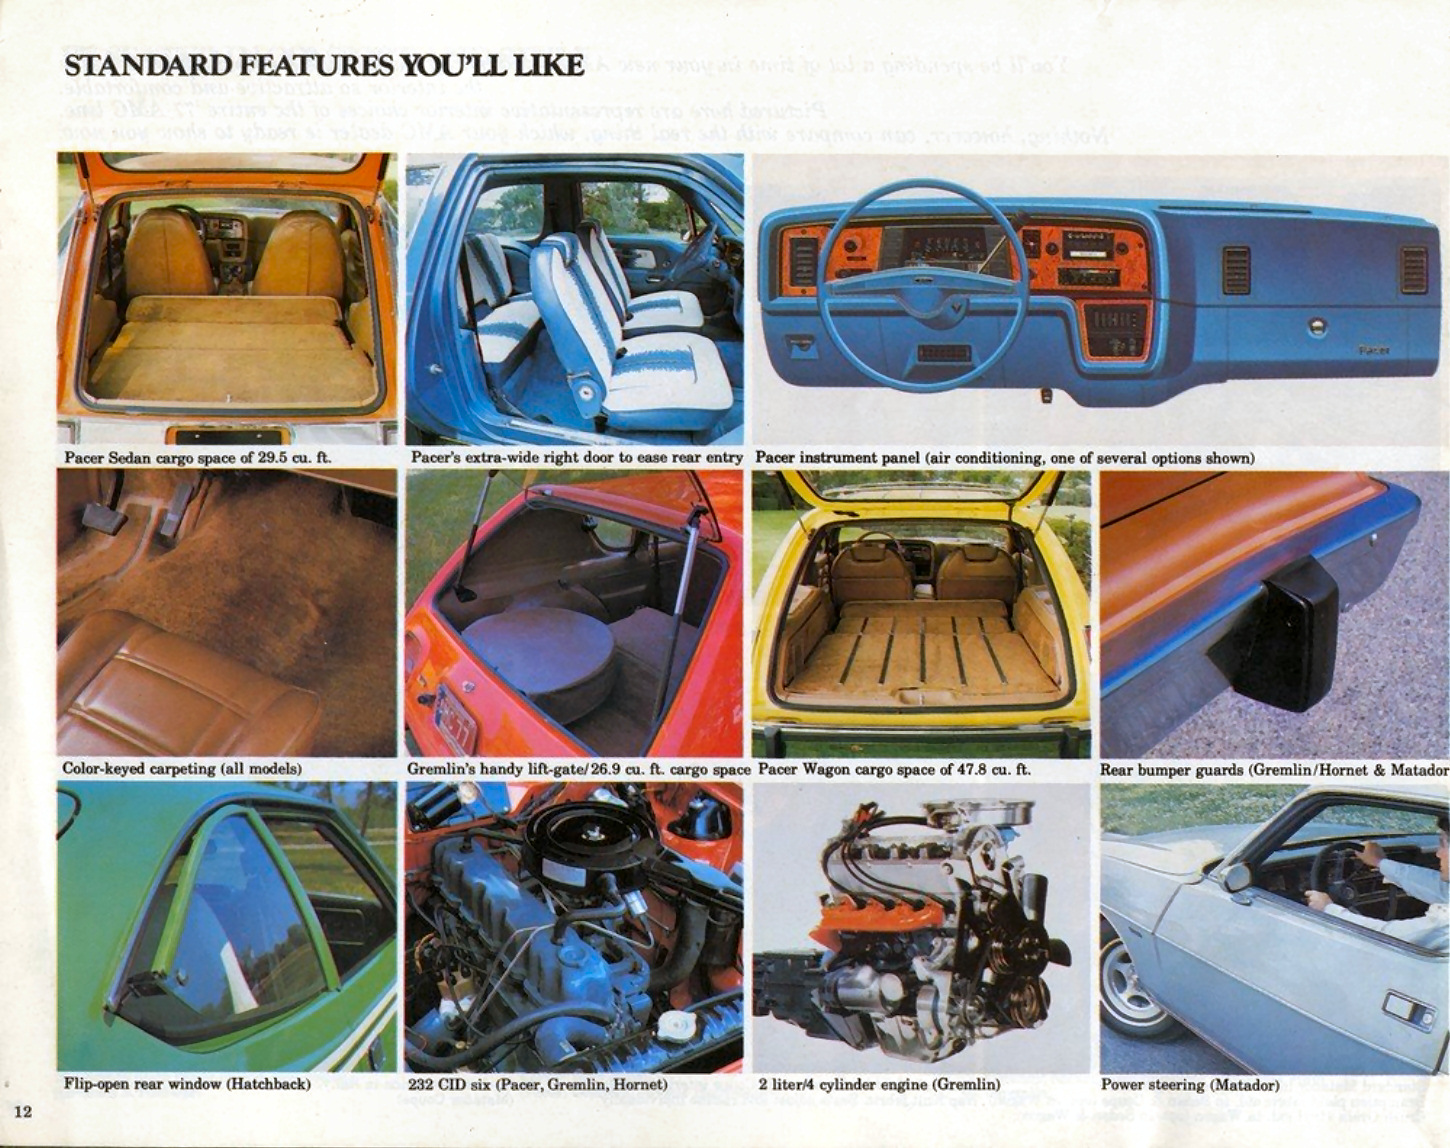 1977_AMC_Auto_Show_Edition_Rev-12